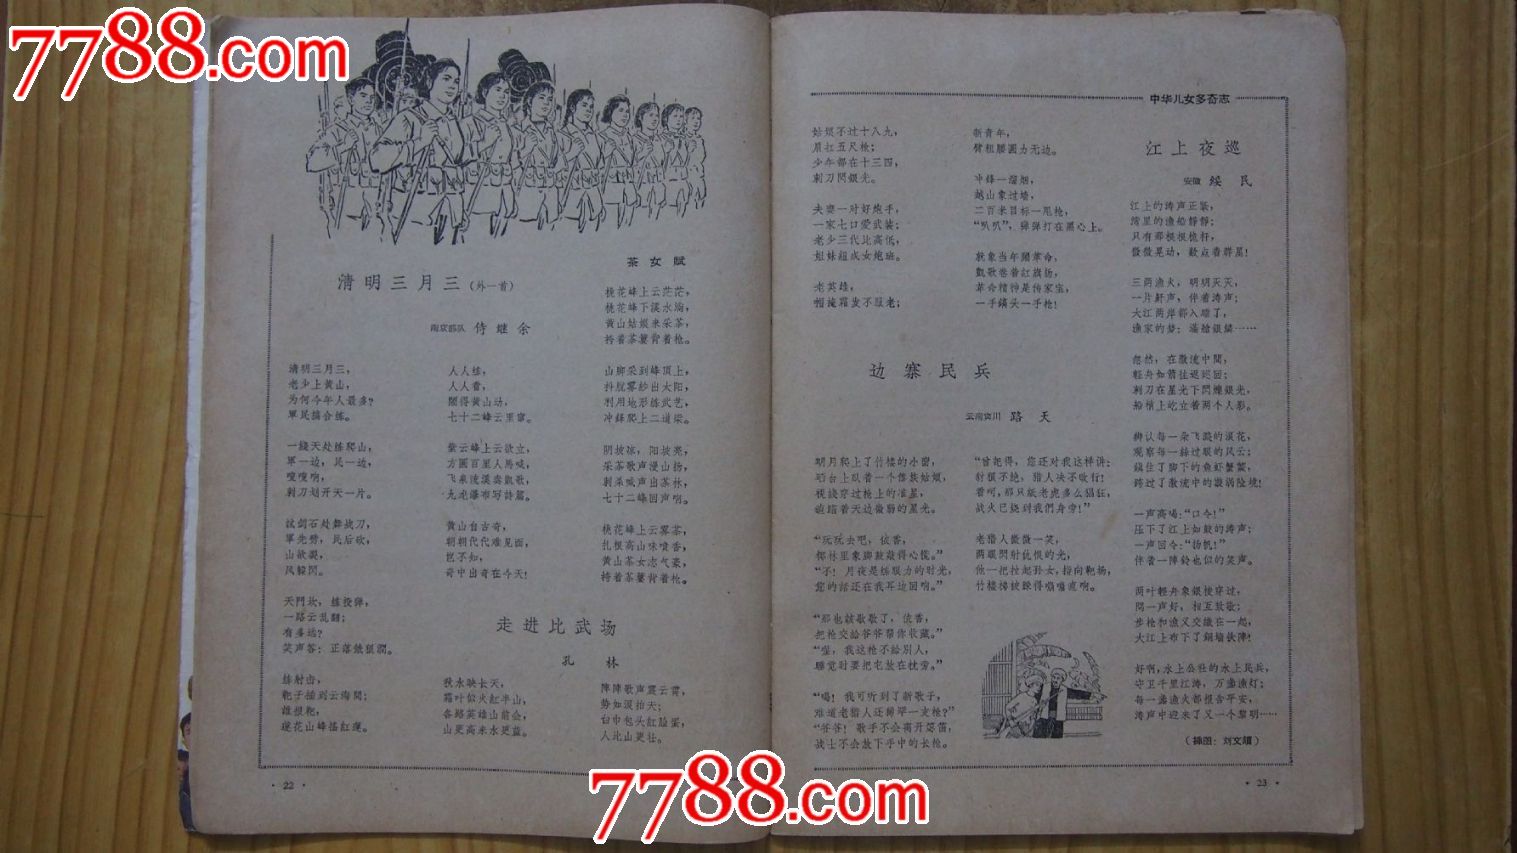 萌芽杂志(1965年第8期)-价格:20元-se2678850